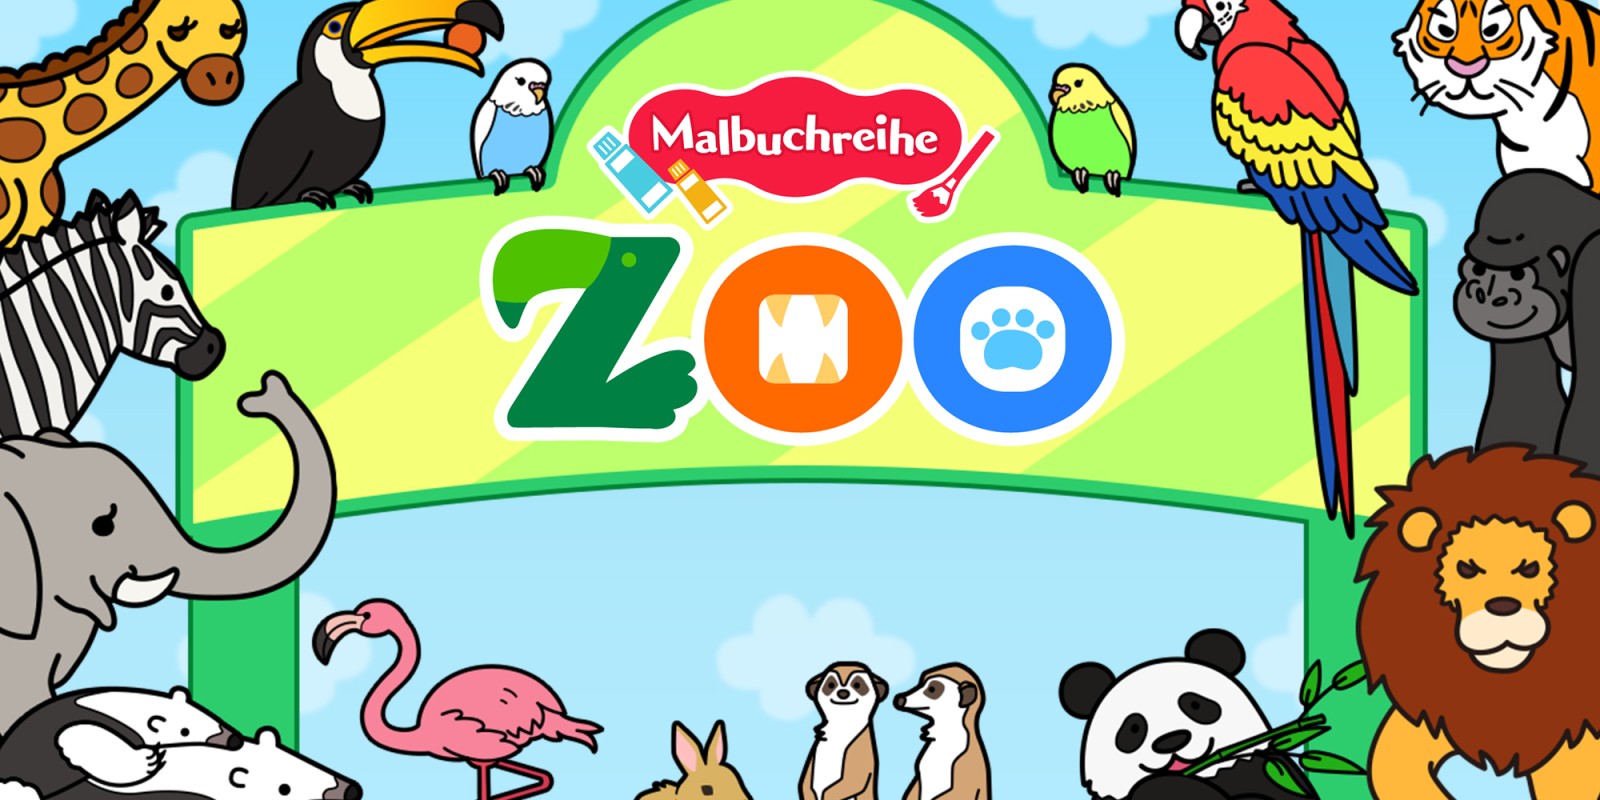 Malbuchreihe Zoo